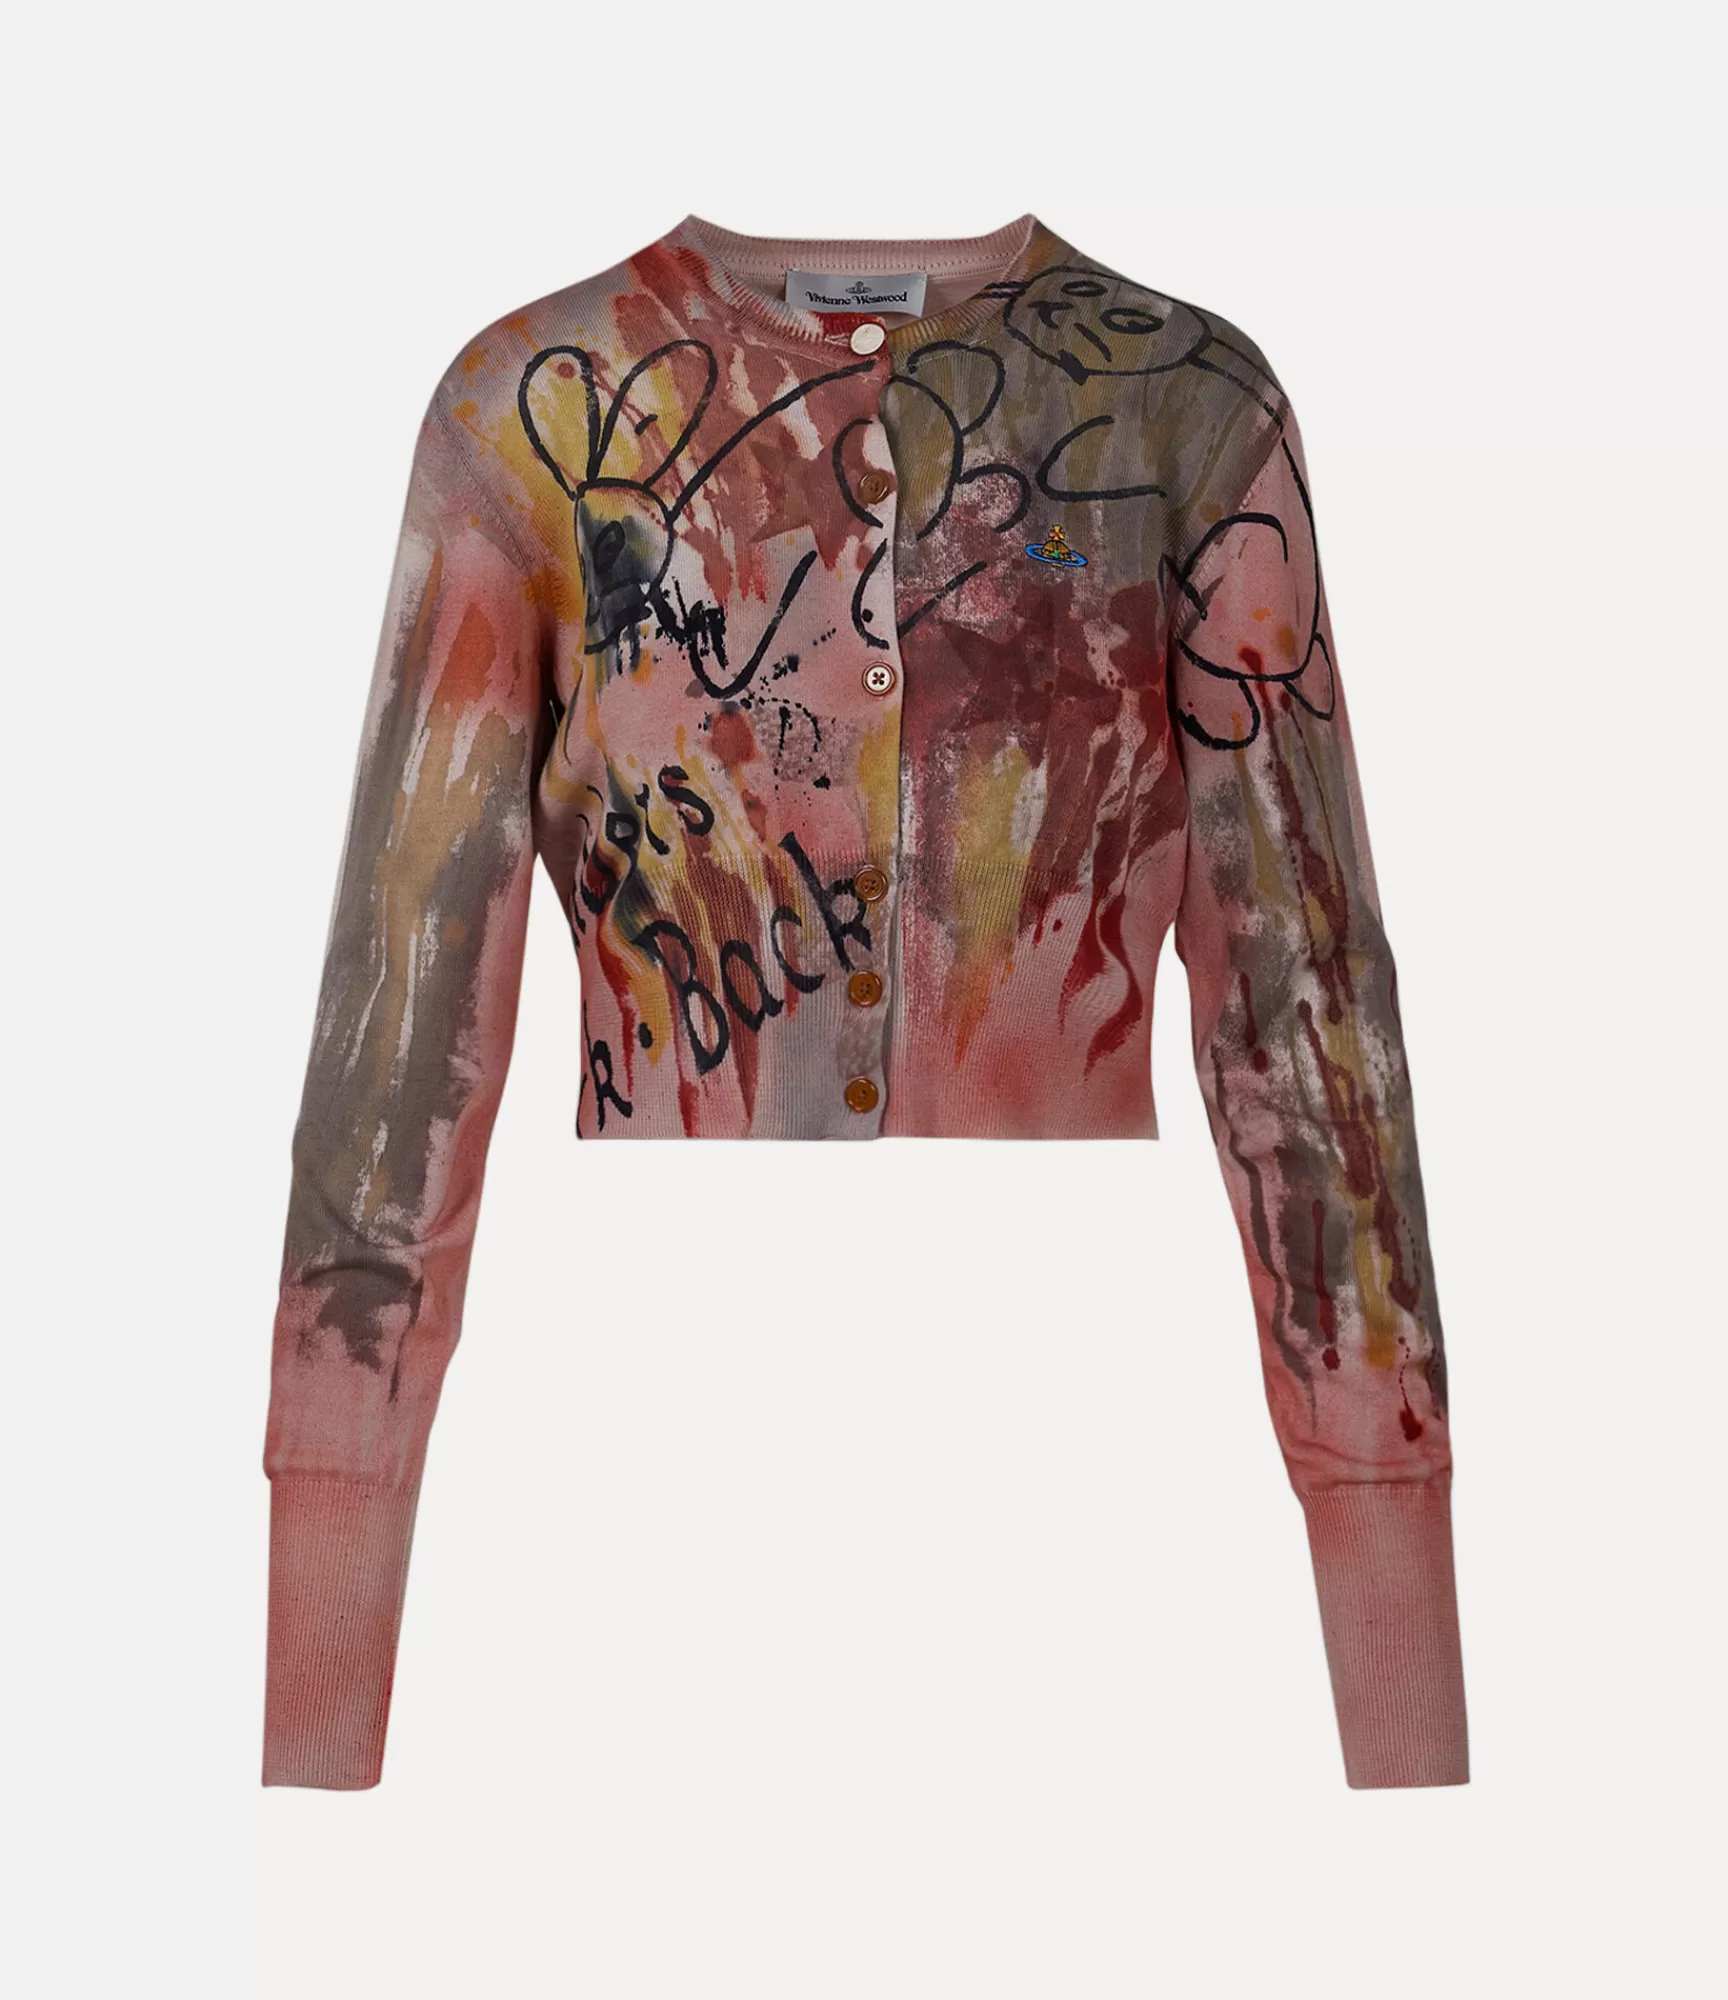 Vivienne Westwood Knitwear*Artist cardi Multi